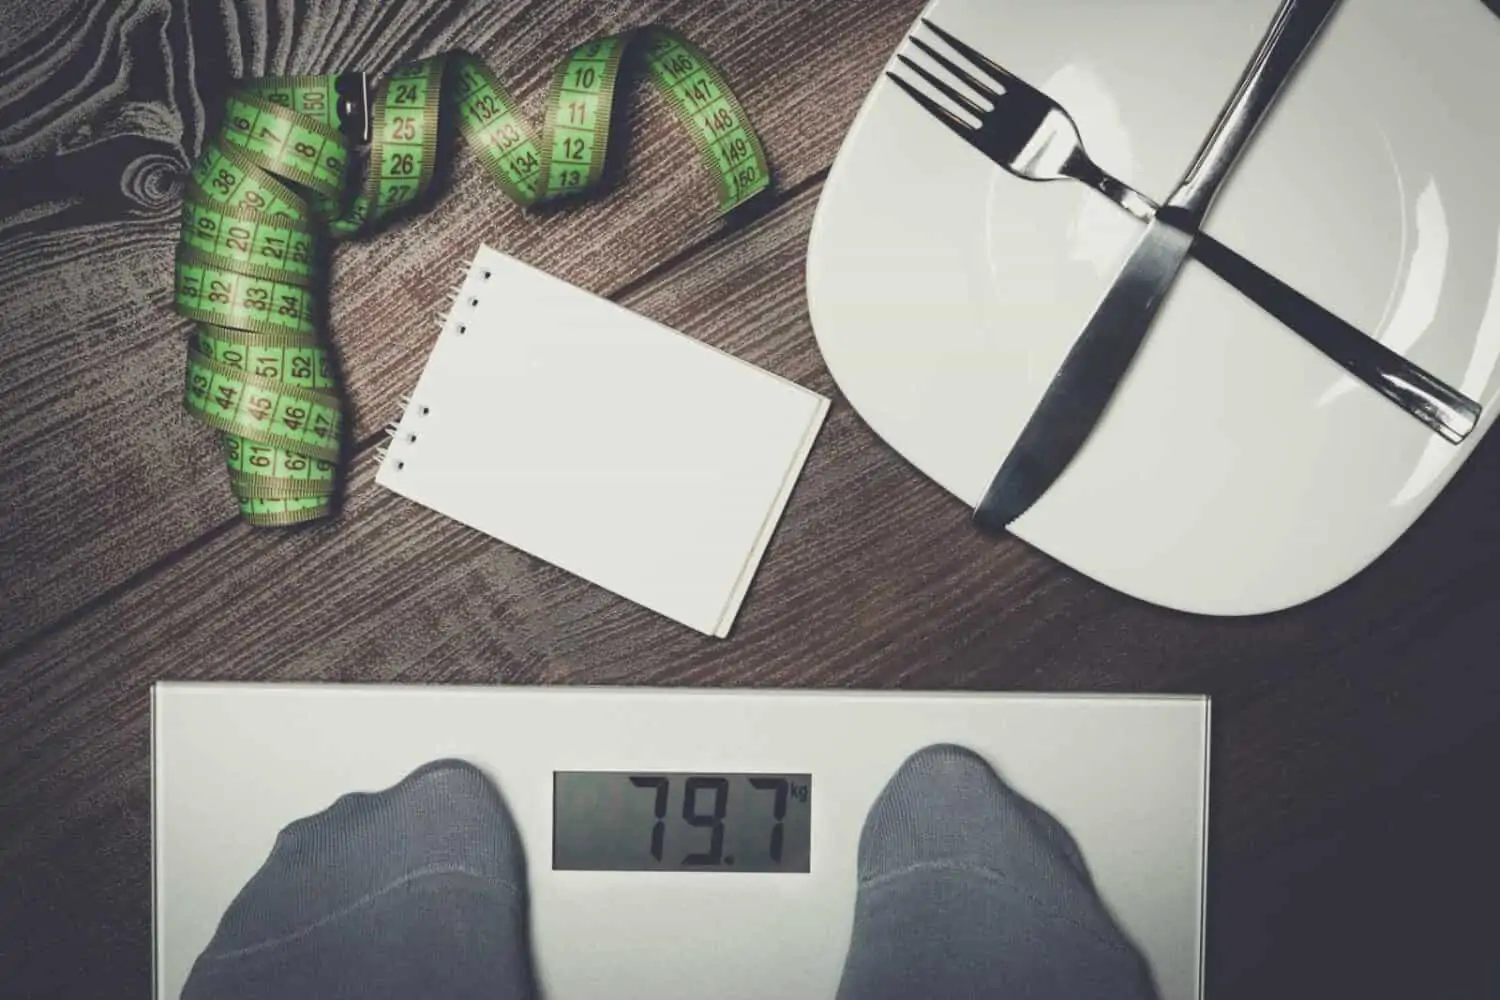 calorías pierden grasa